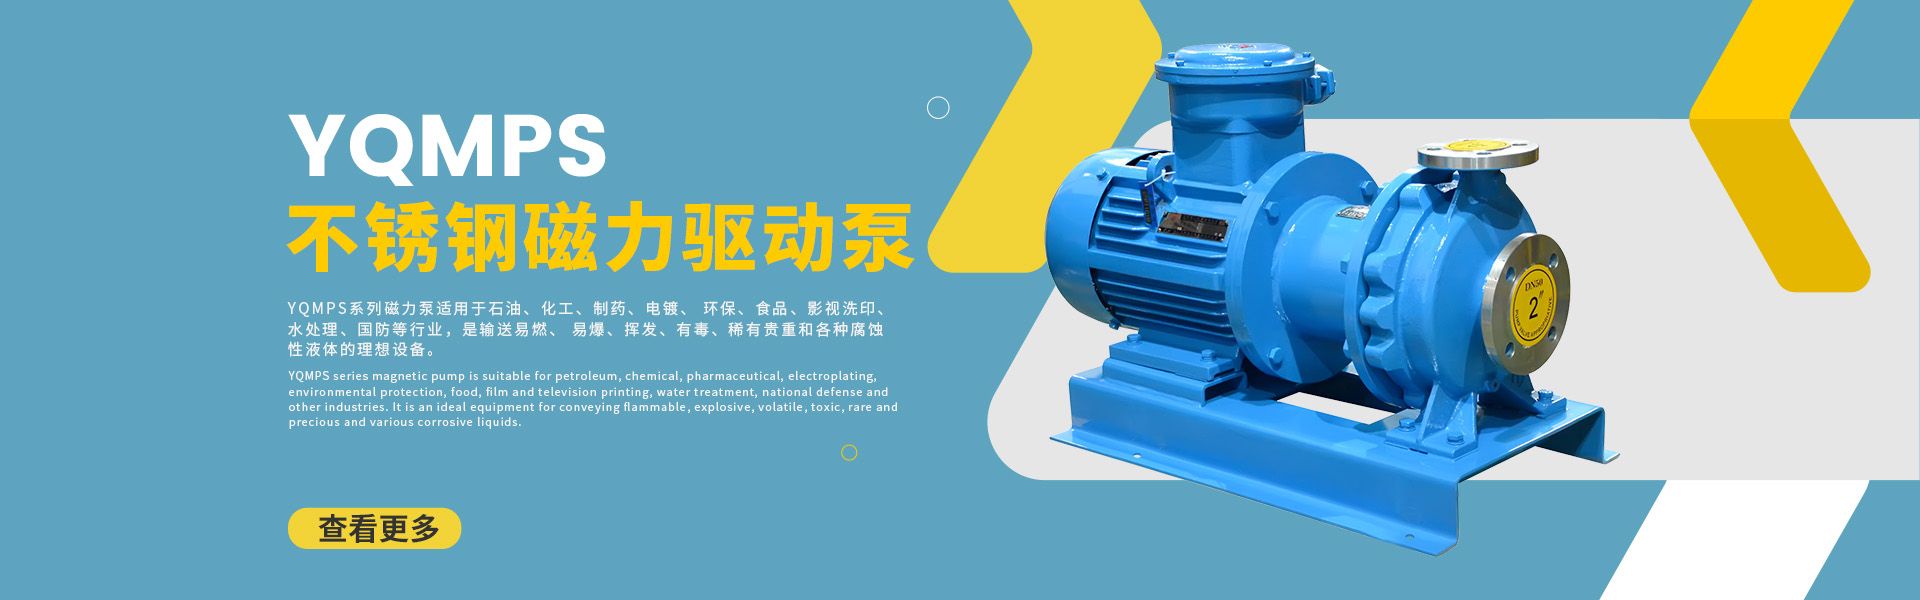 管道泵|磁力泵|化工泵|齒輪泵